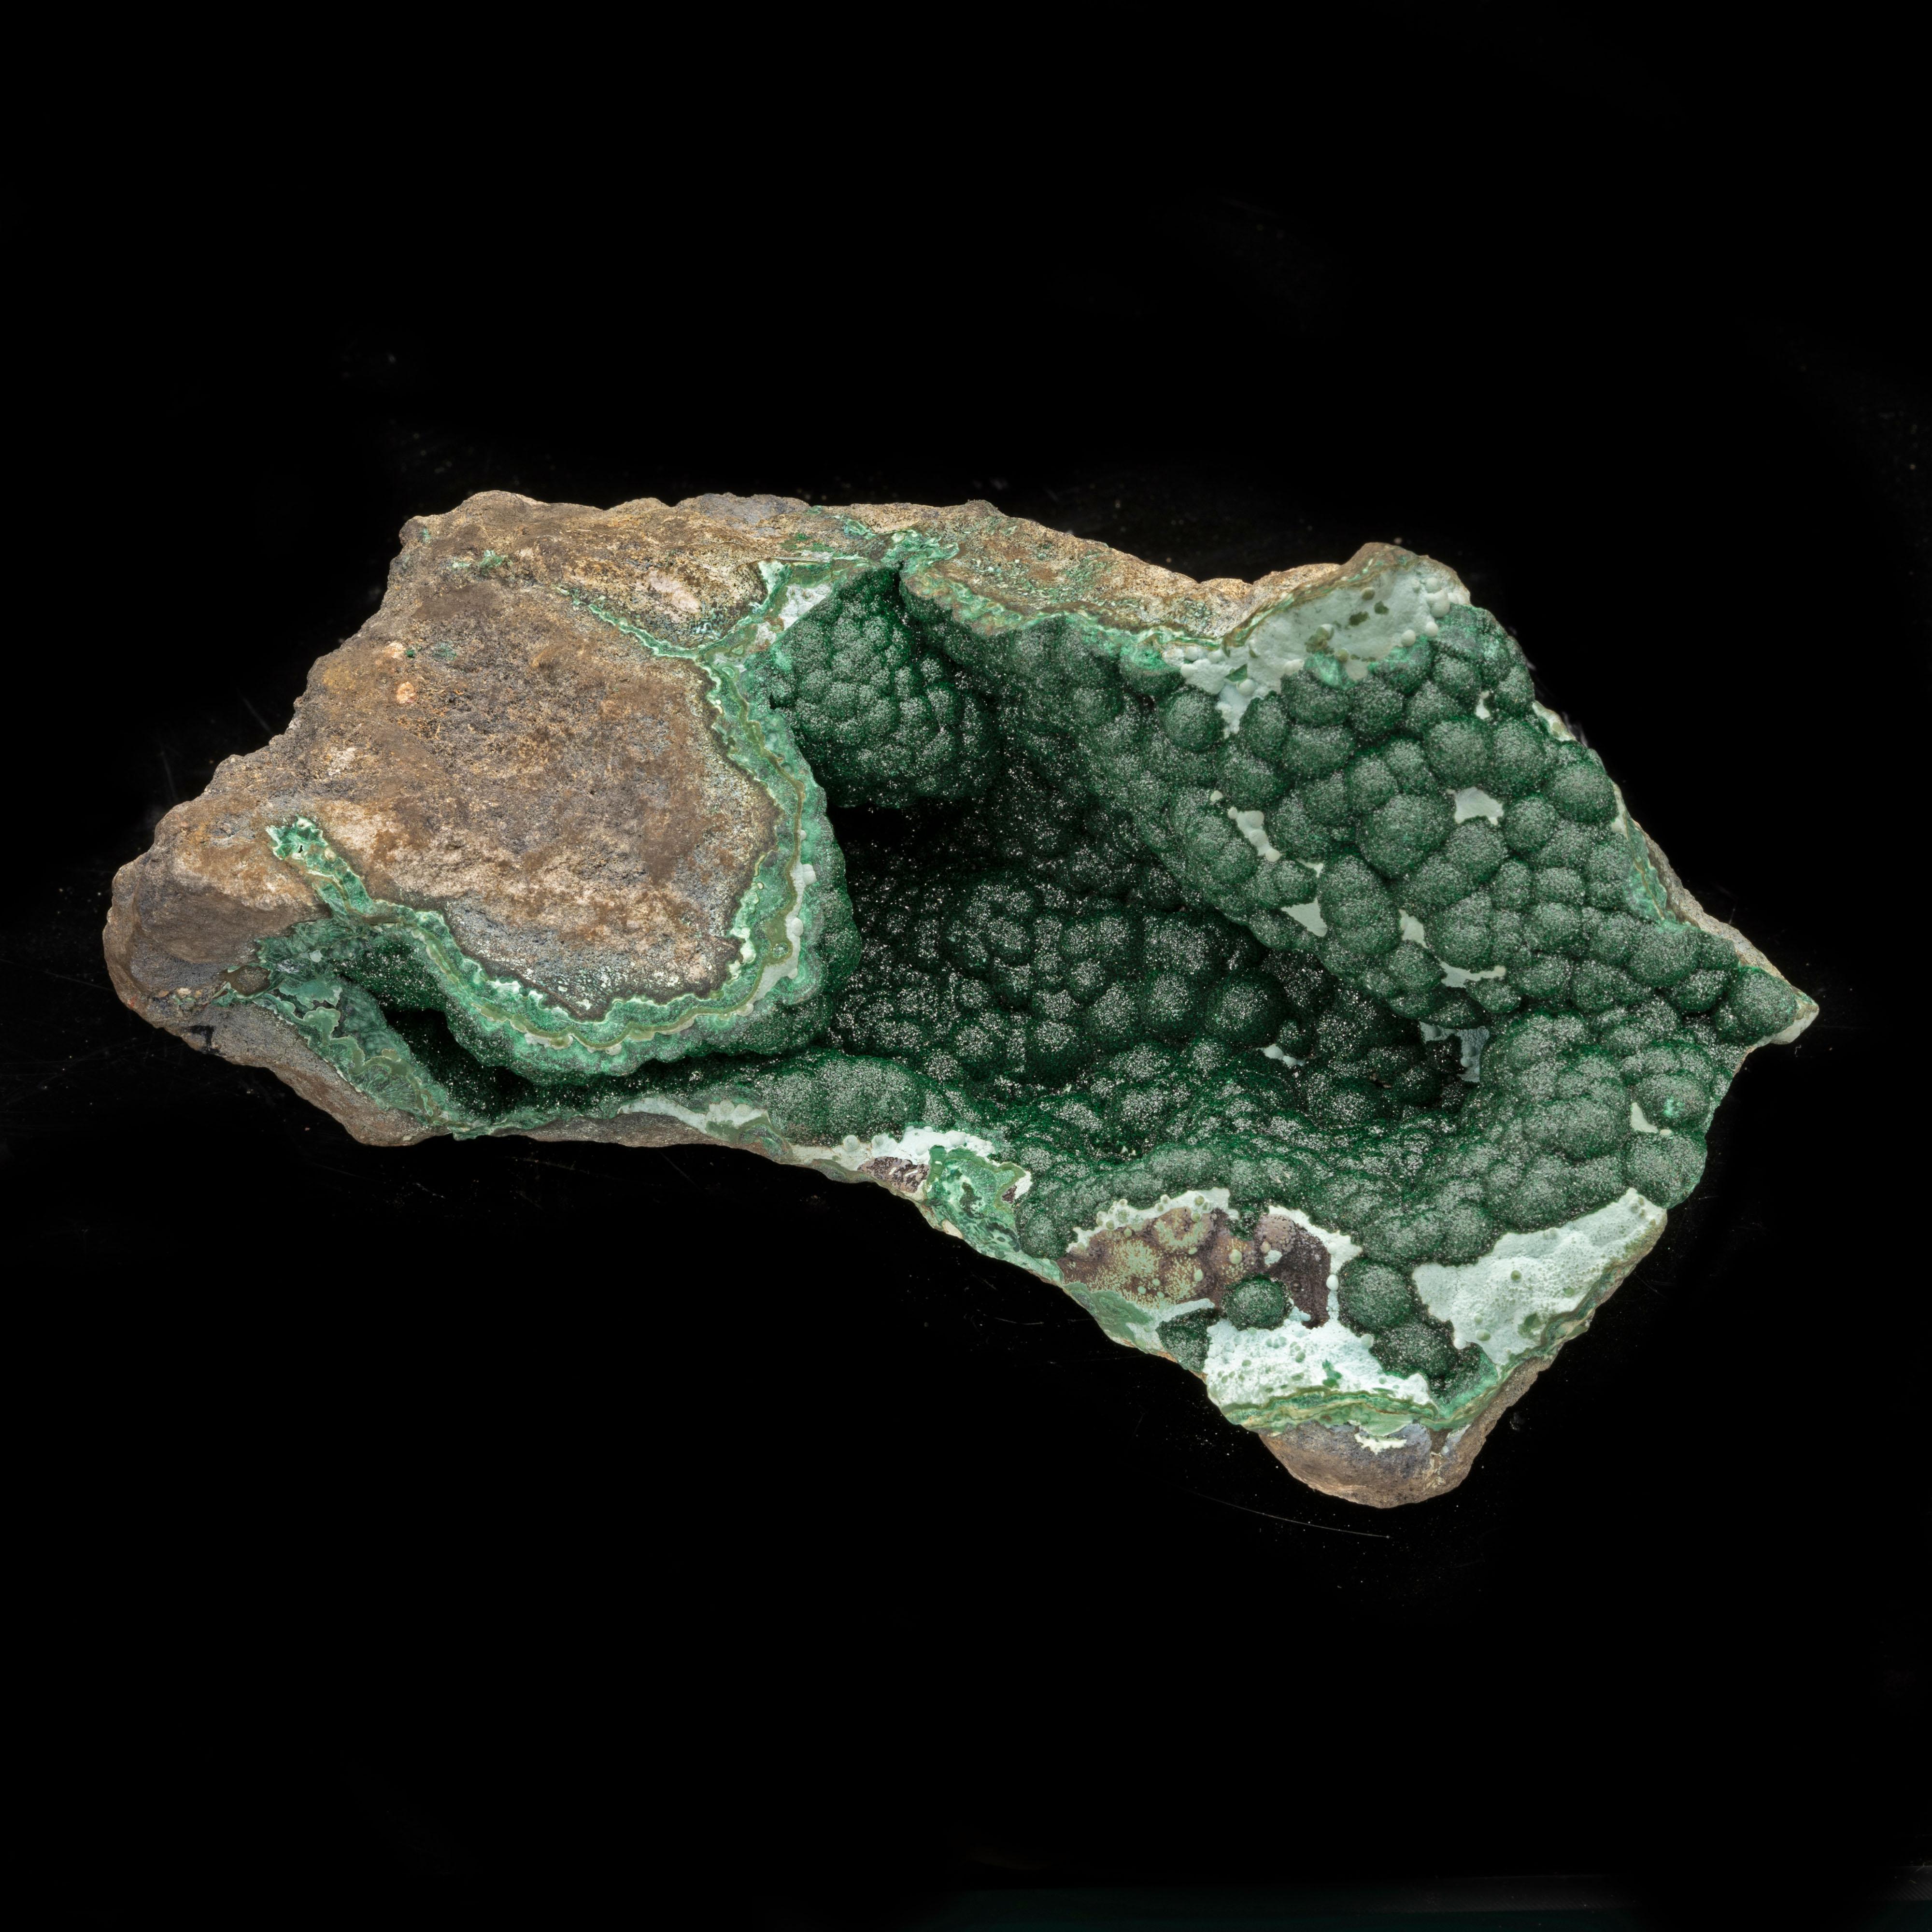 Das samtige, mit Schleim überzogene Innere dieser mit natürlichen Kristallen ausgekleideten Felsspalte ist mit einer Fülle wunderschön geformter, tief smaragdgrüner, botryoider Malachitkristalle gefüllt. Das Stück hat eine dynamische, skulpturale